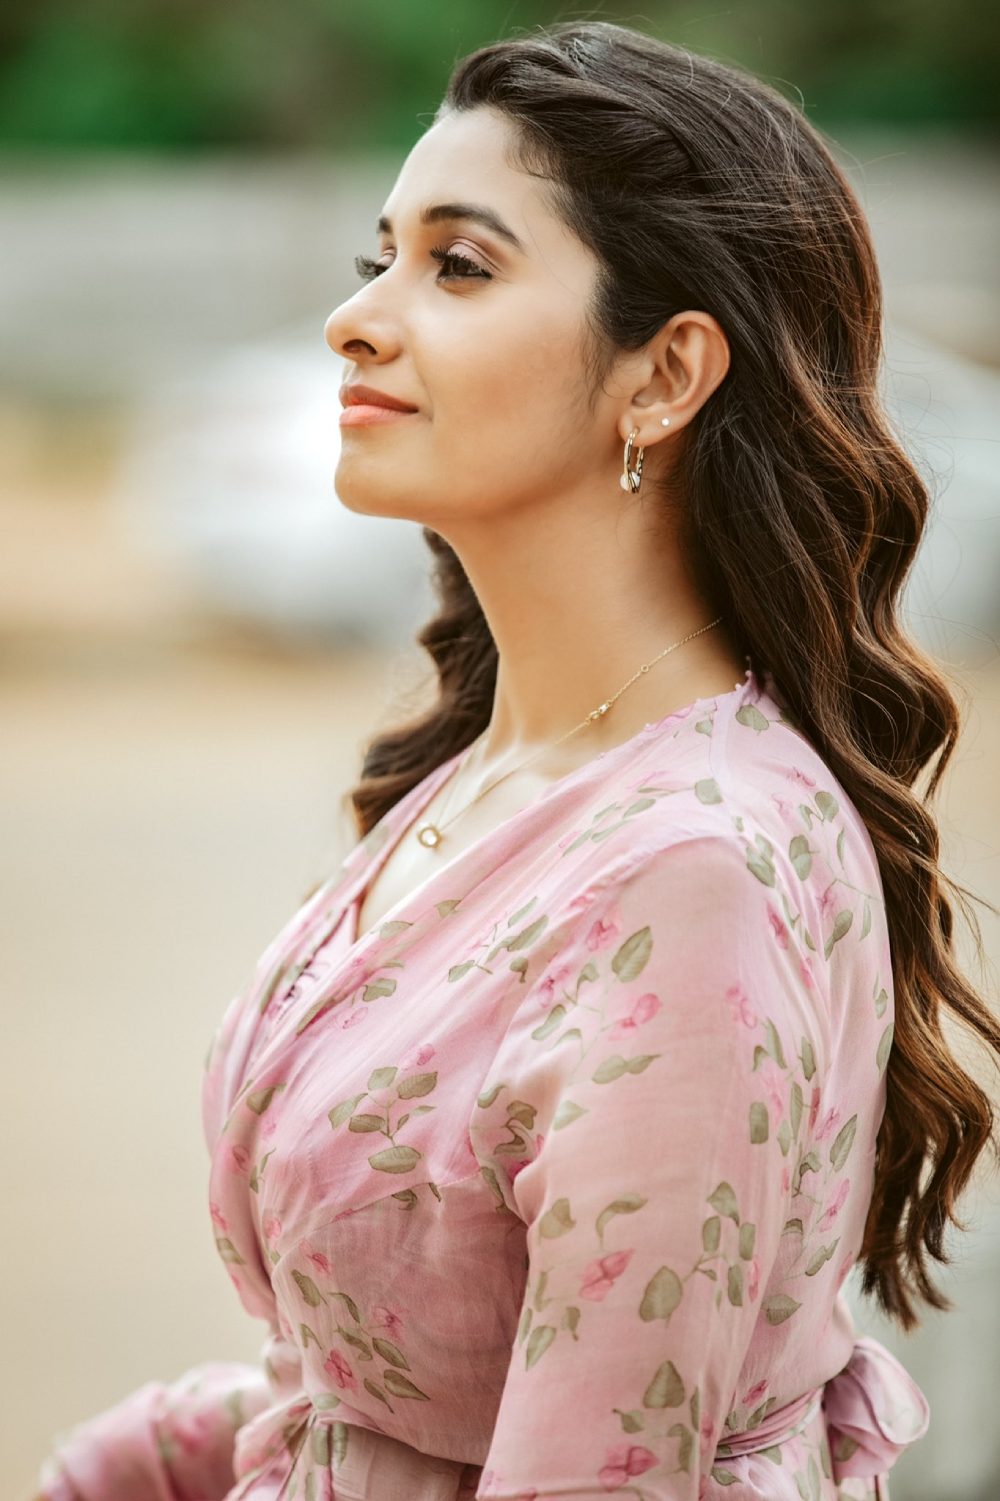 Priya Bhavani Shankar's elegant look